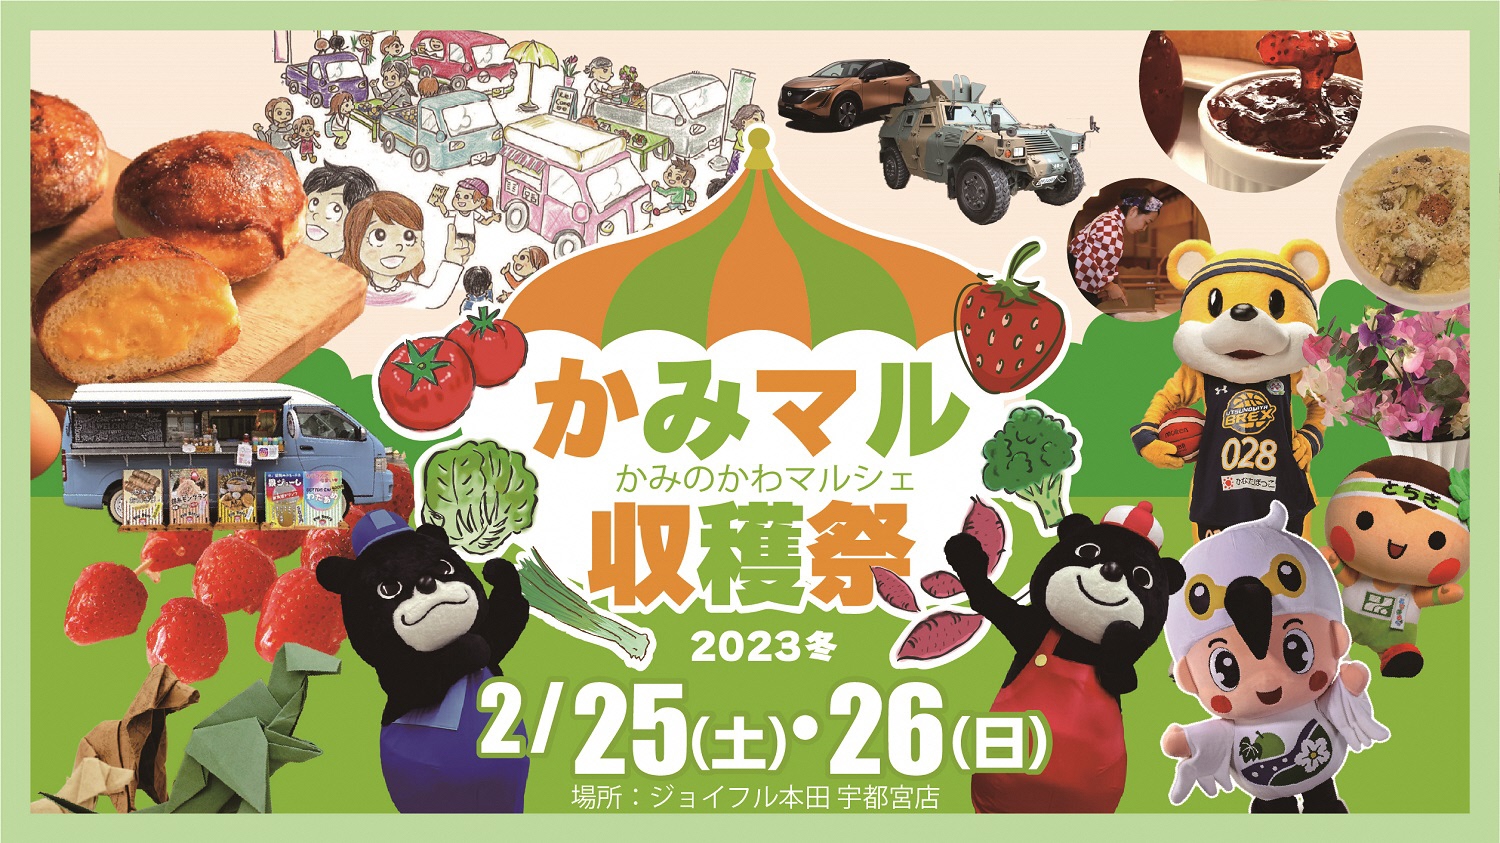 2023年2月25日(土)、26日(日)  マル収穫祭@ジョイフル本田宇都宮店